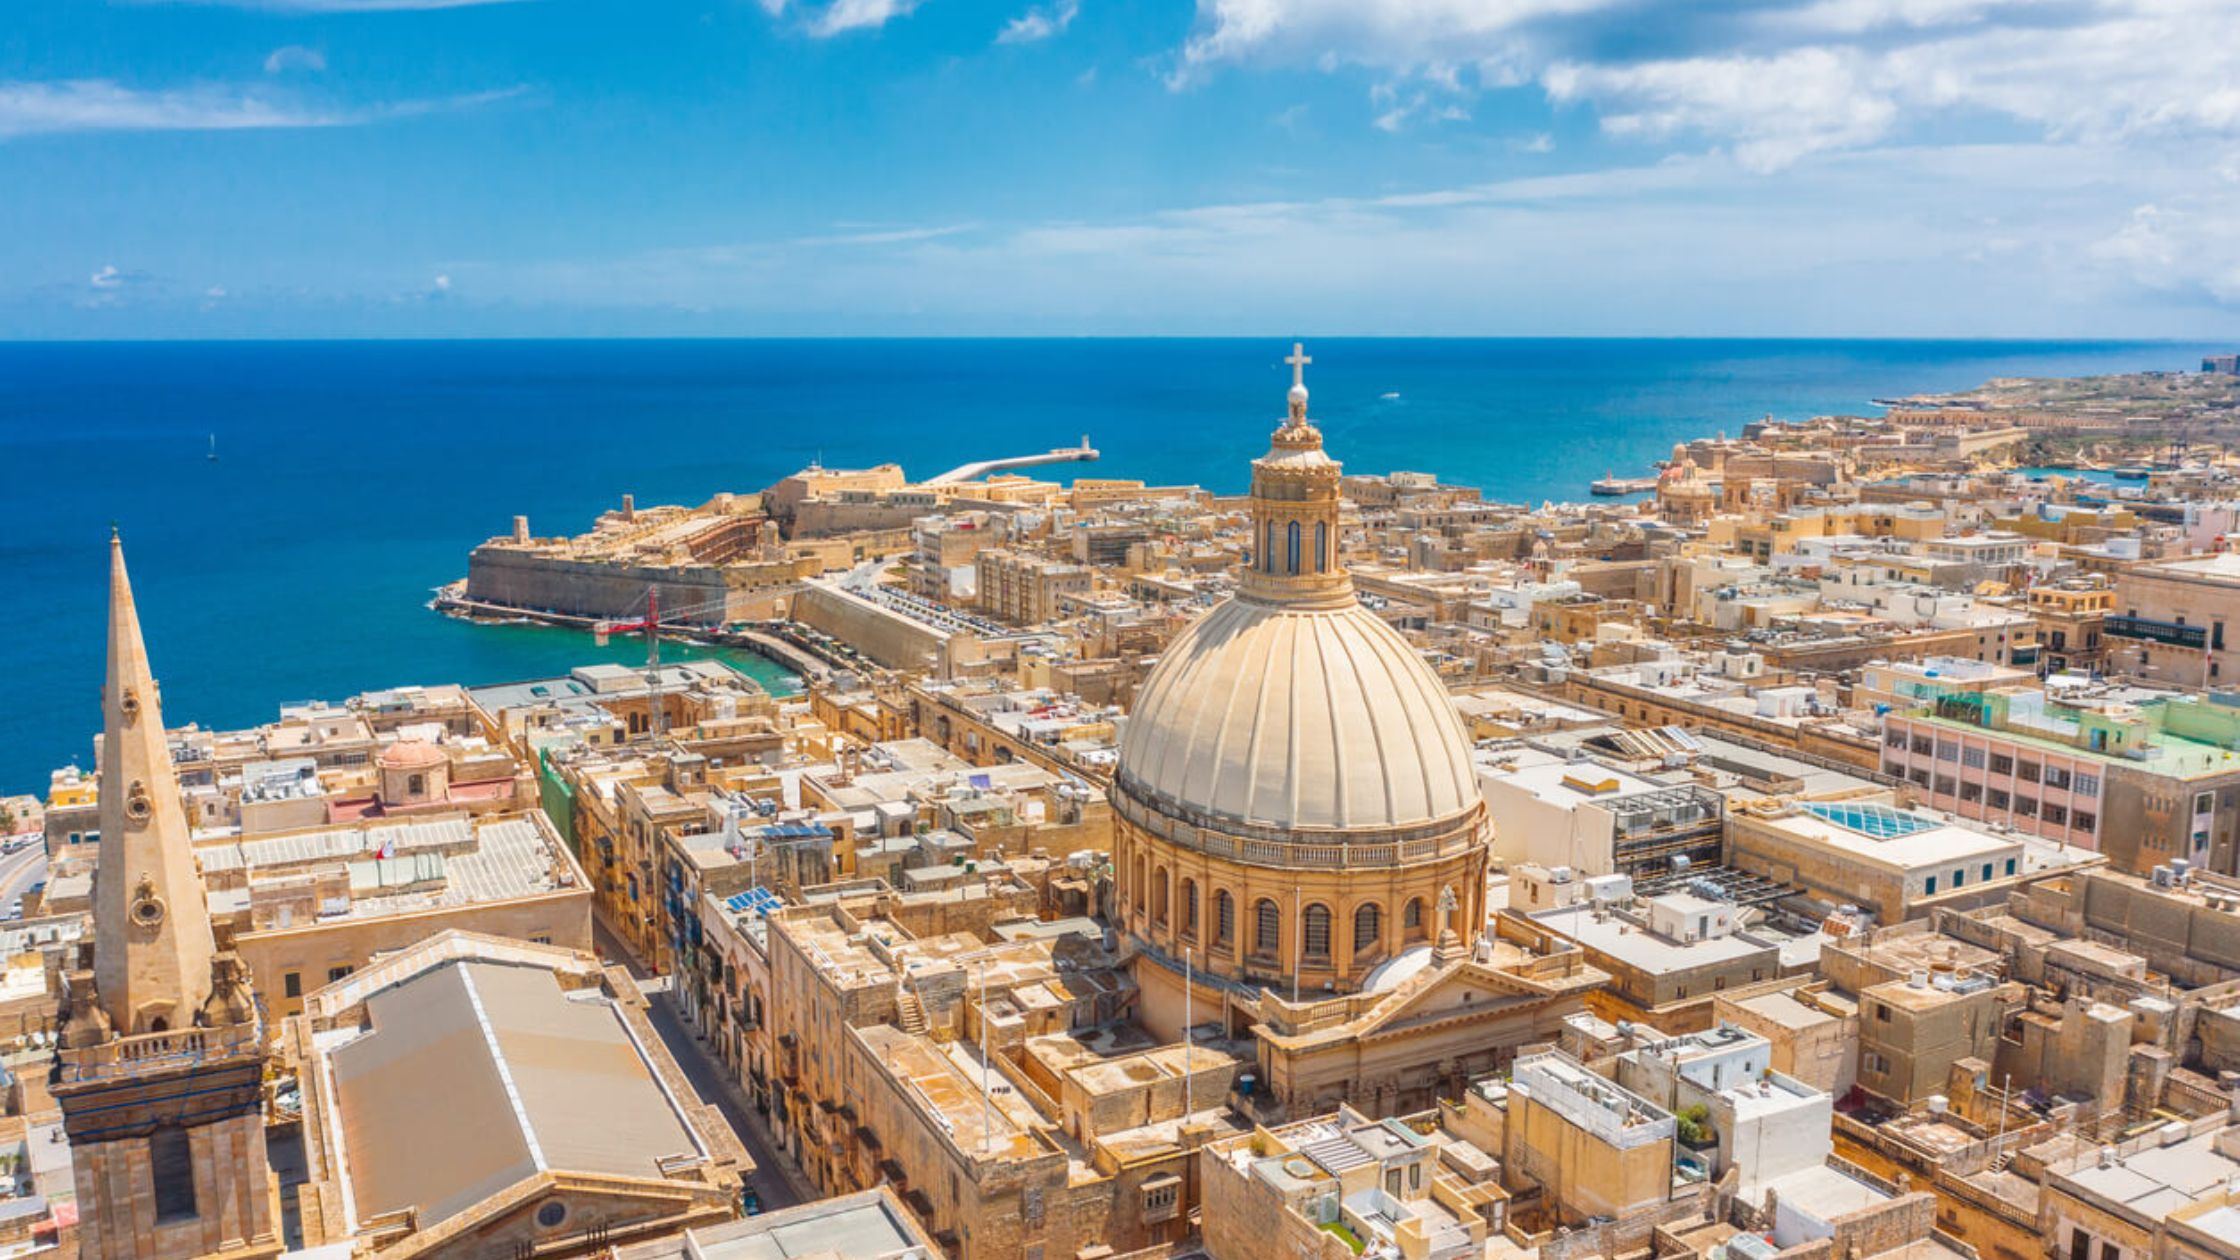 La Valeta, capital de Malta